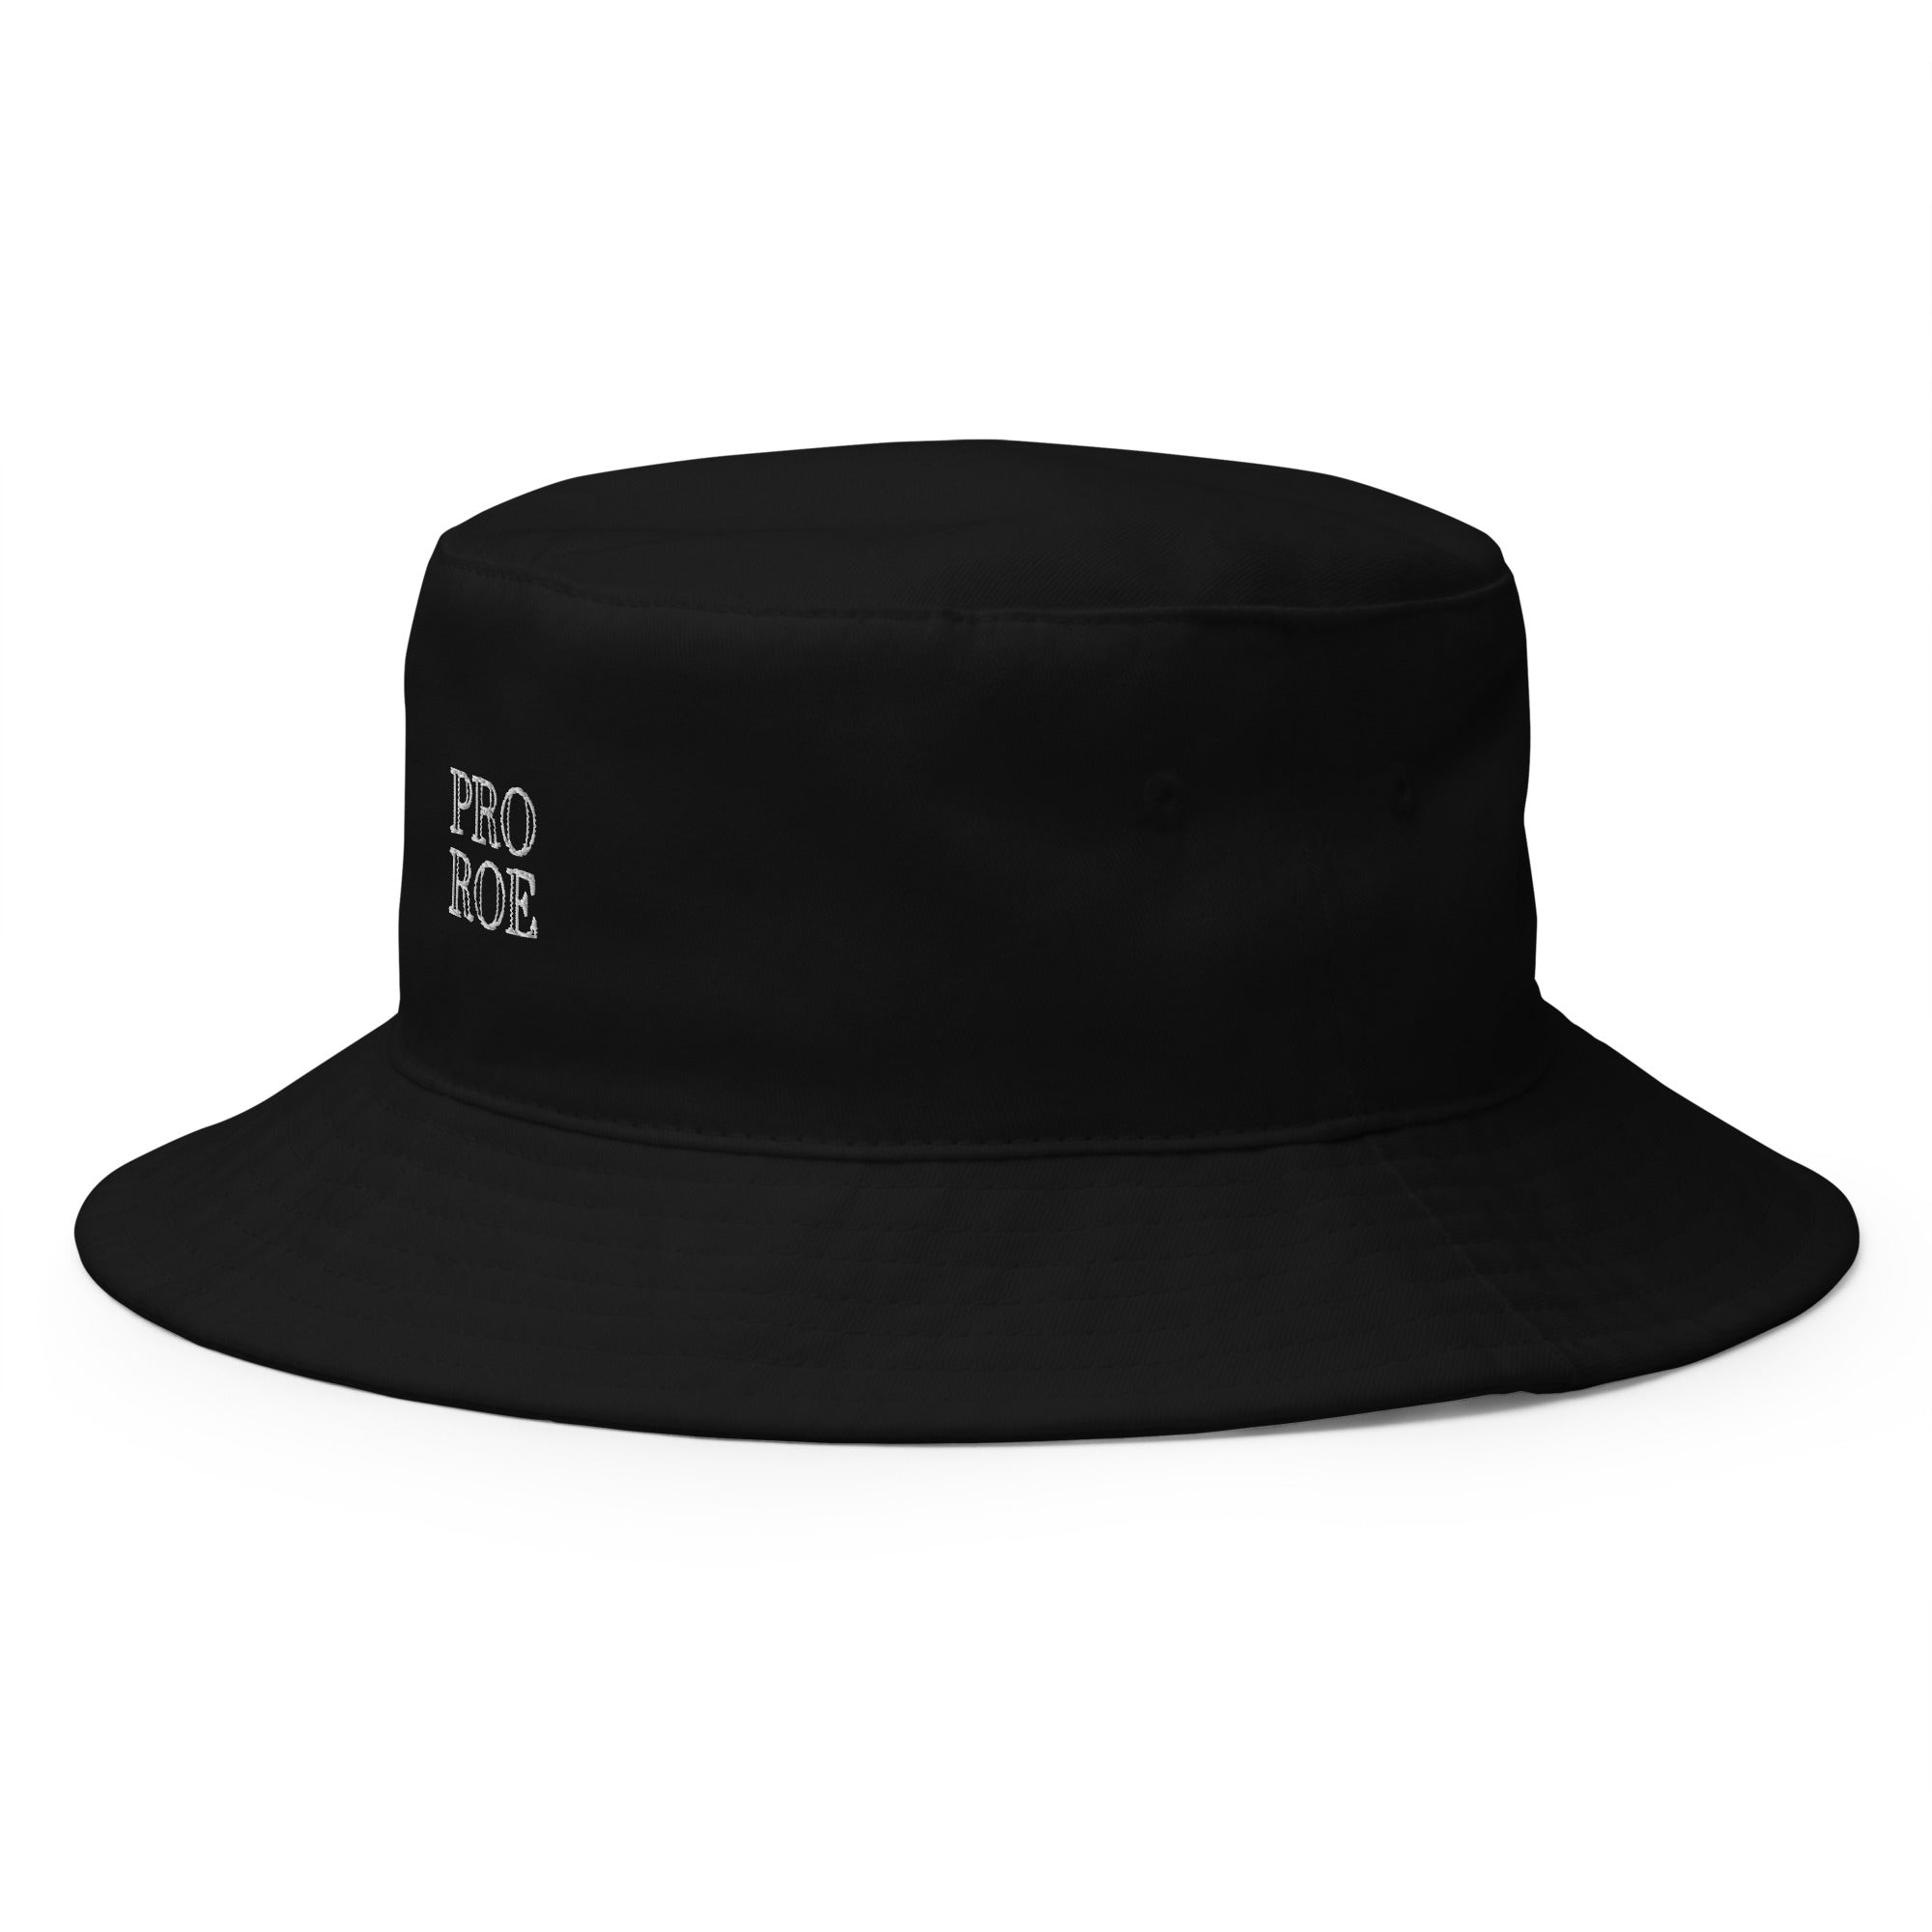 Pro Roe || Bucket Hat